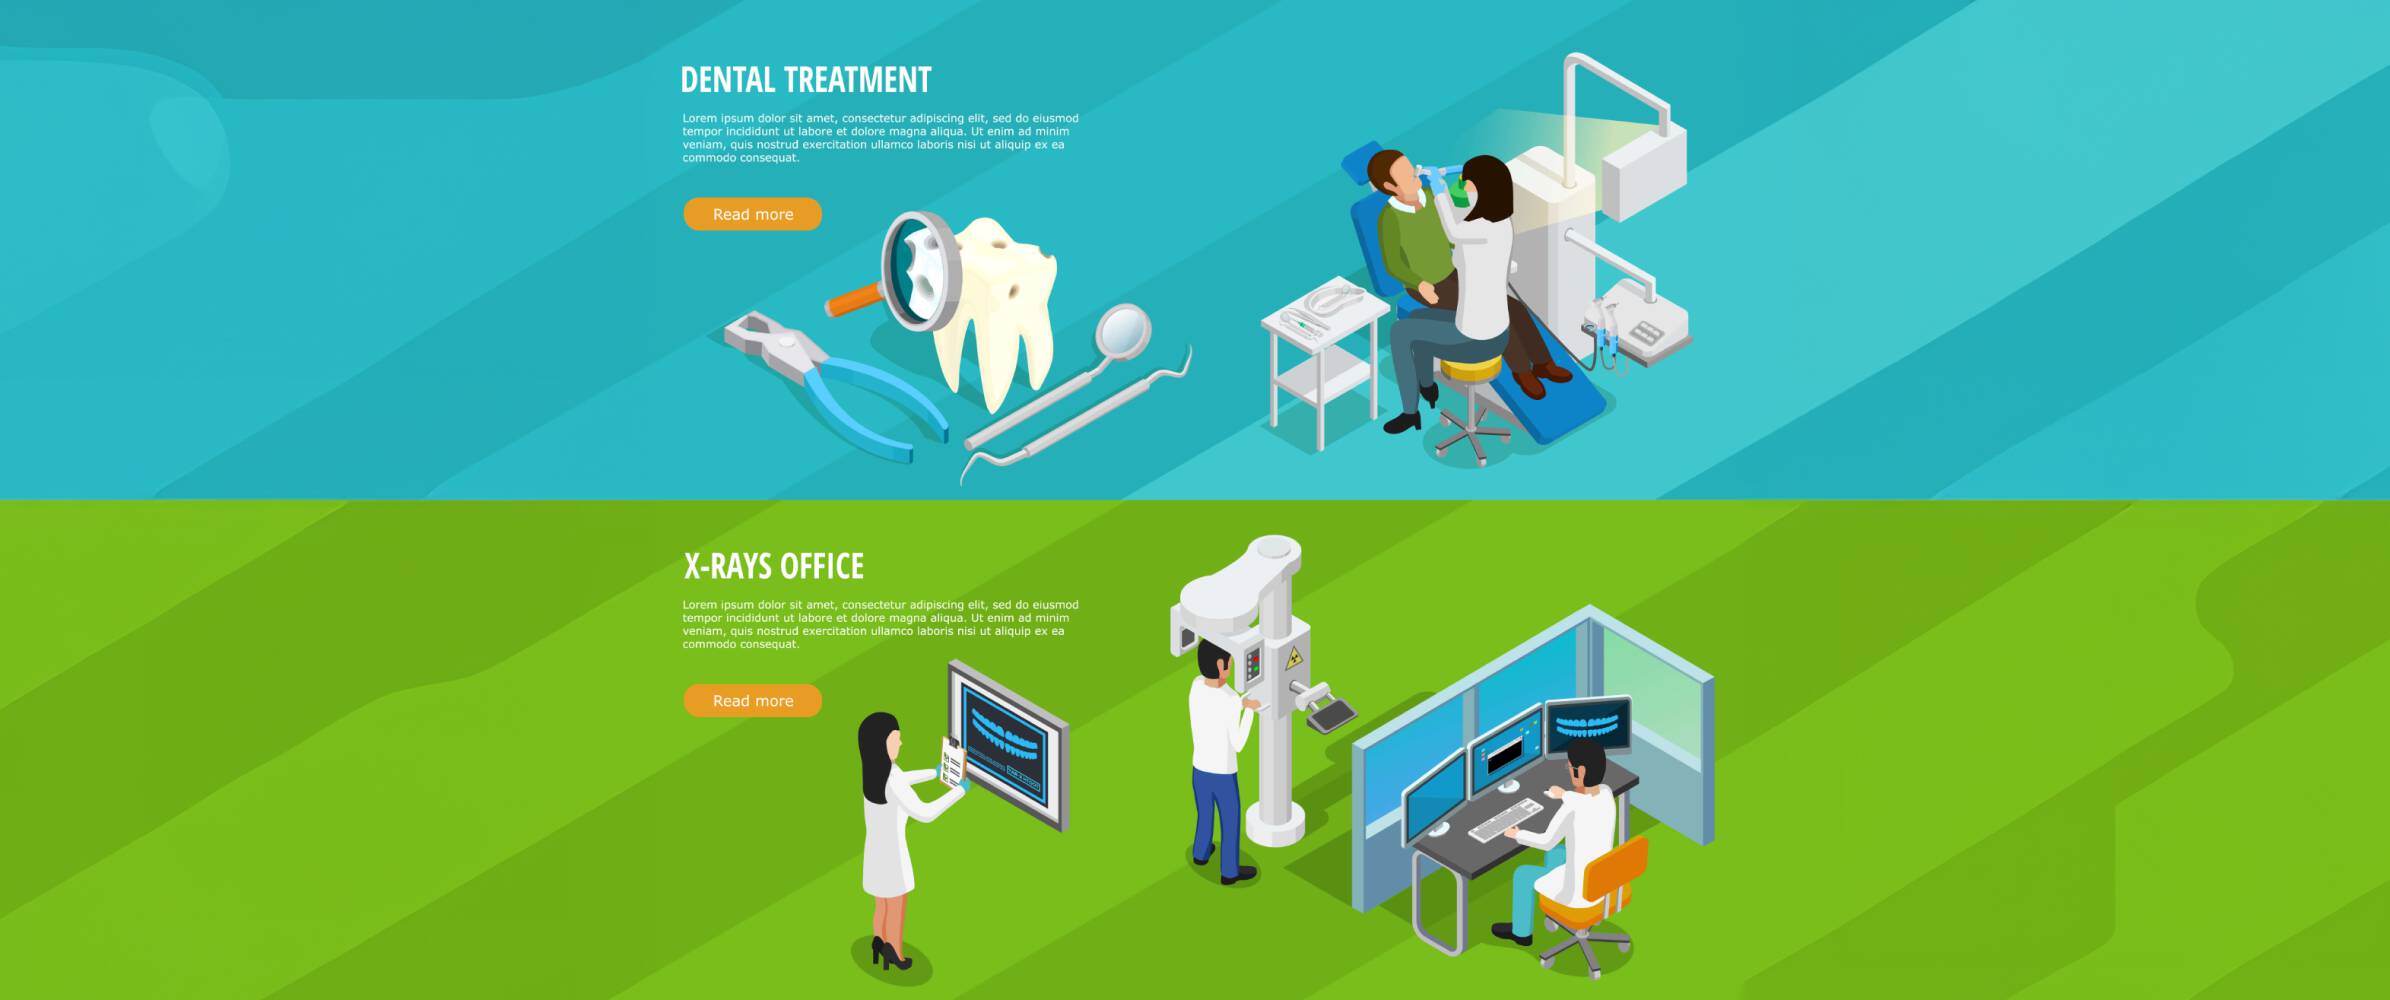 Advanced 3D Dental Imaging for Dental Care